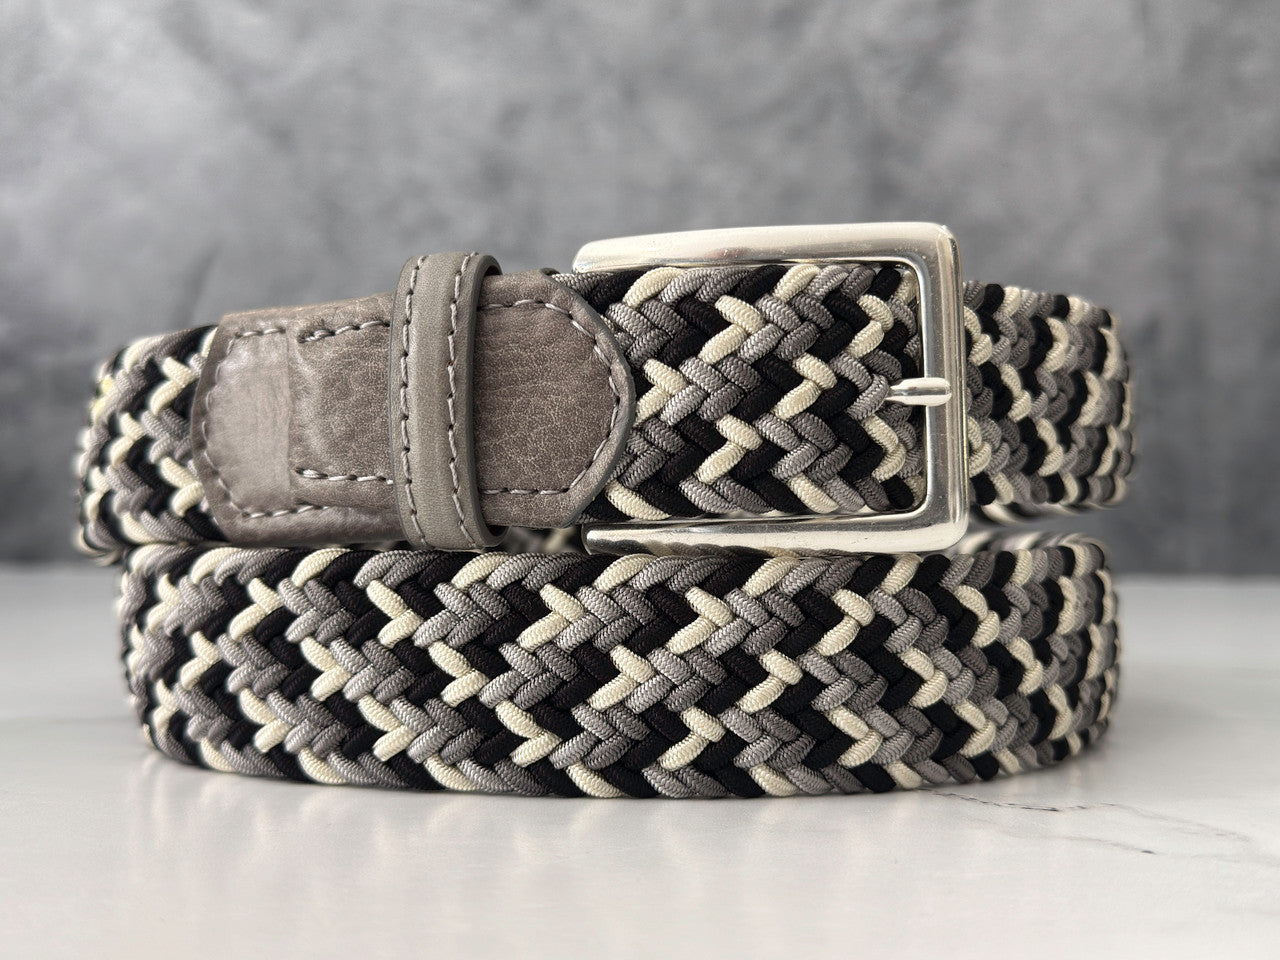 Plaited Italian leather belt